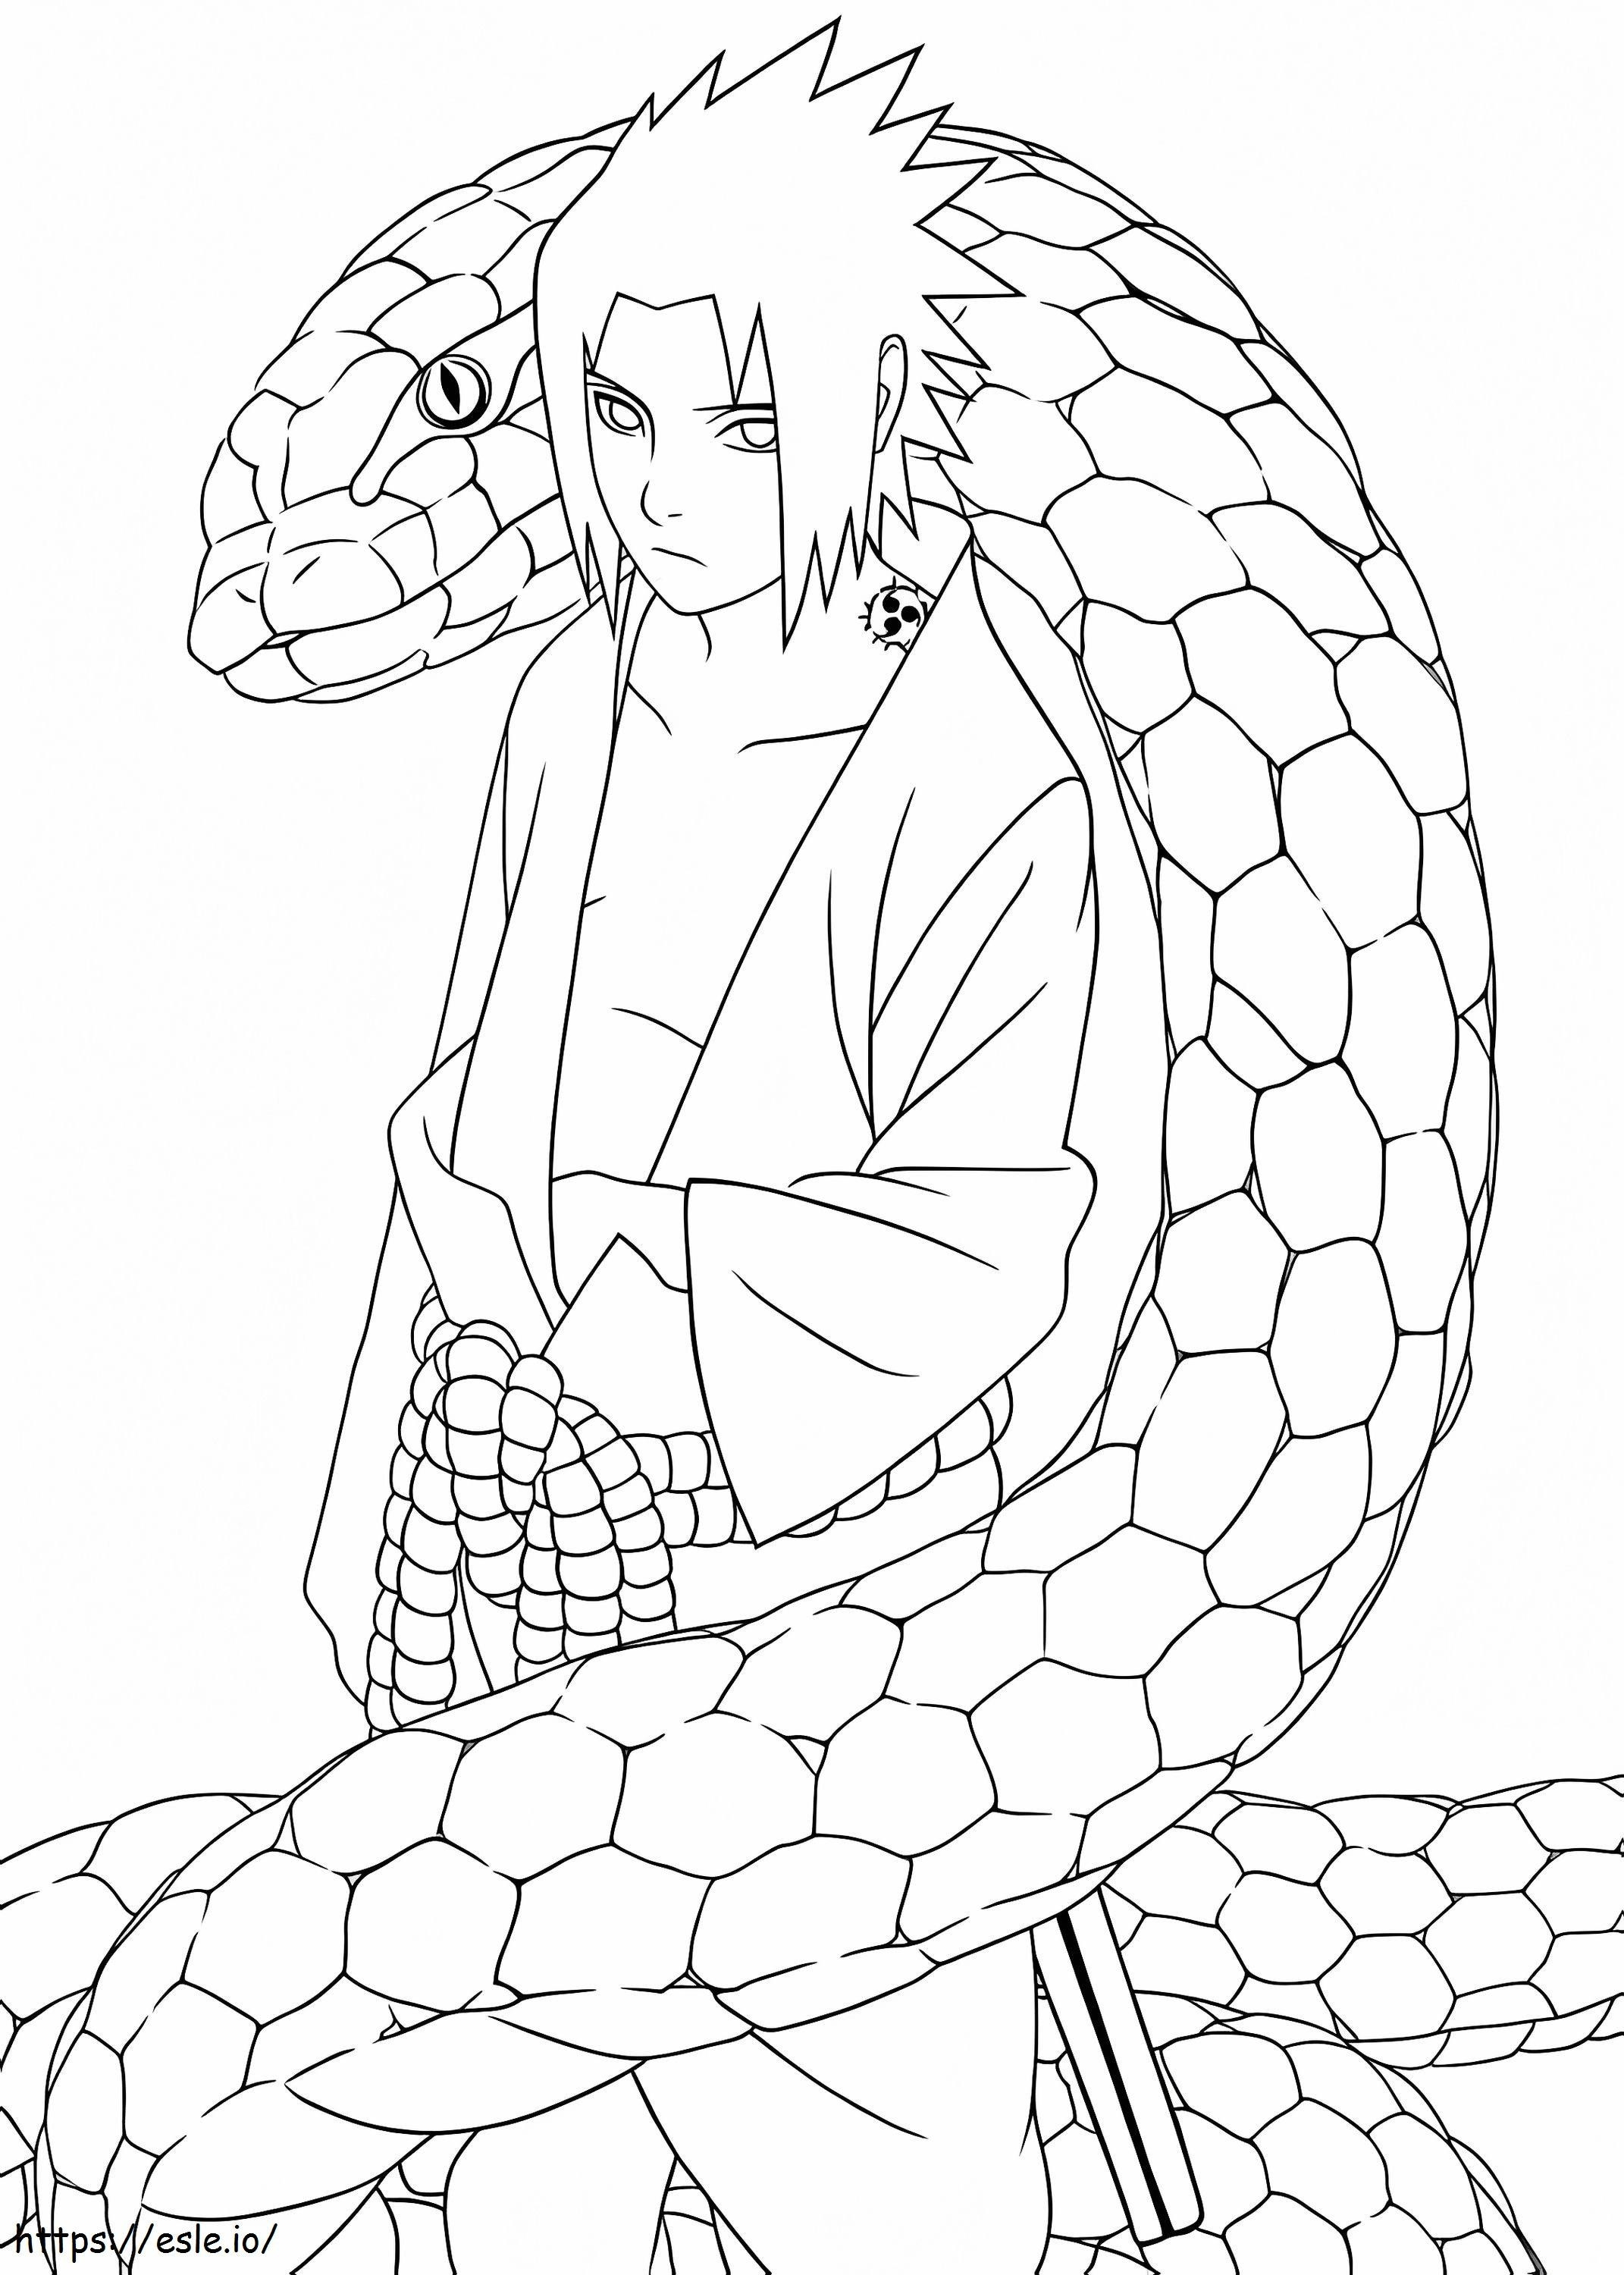 Sasuke Et Son Serpent coloring page